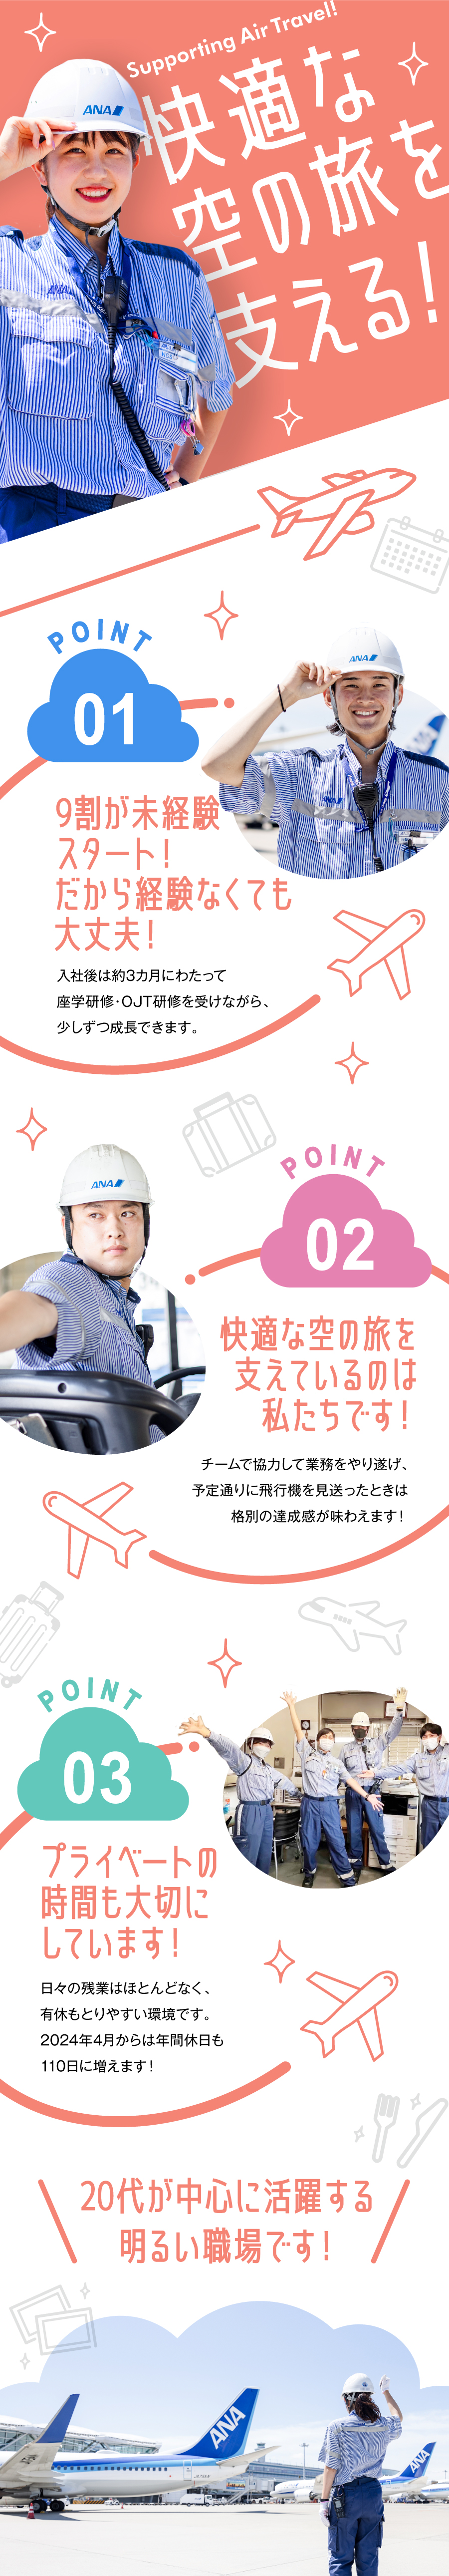 羽田空港サービス株式会社からのメッセージ